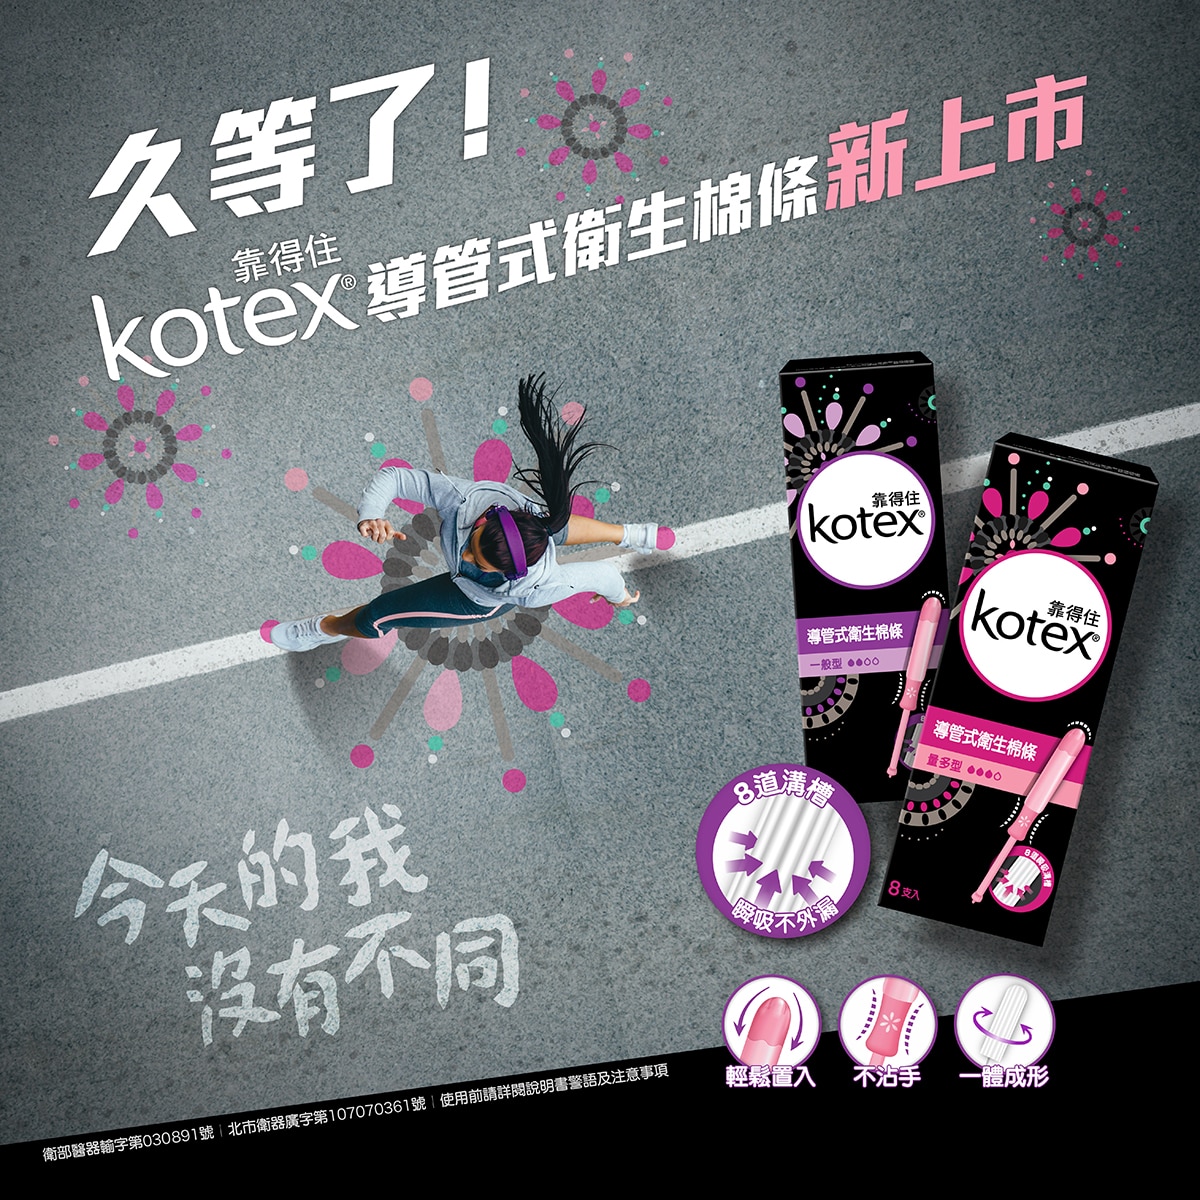 Kotex 導管式衛生棉條 一般型,8道溝槽,瞬間不外露,輕鬆置入,不沾手,一體成型。